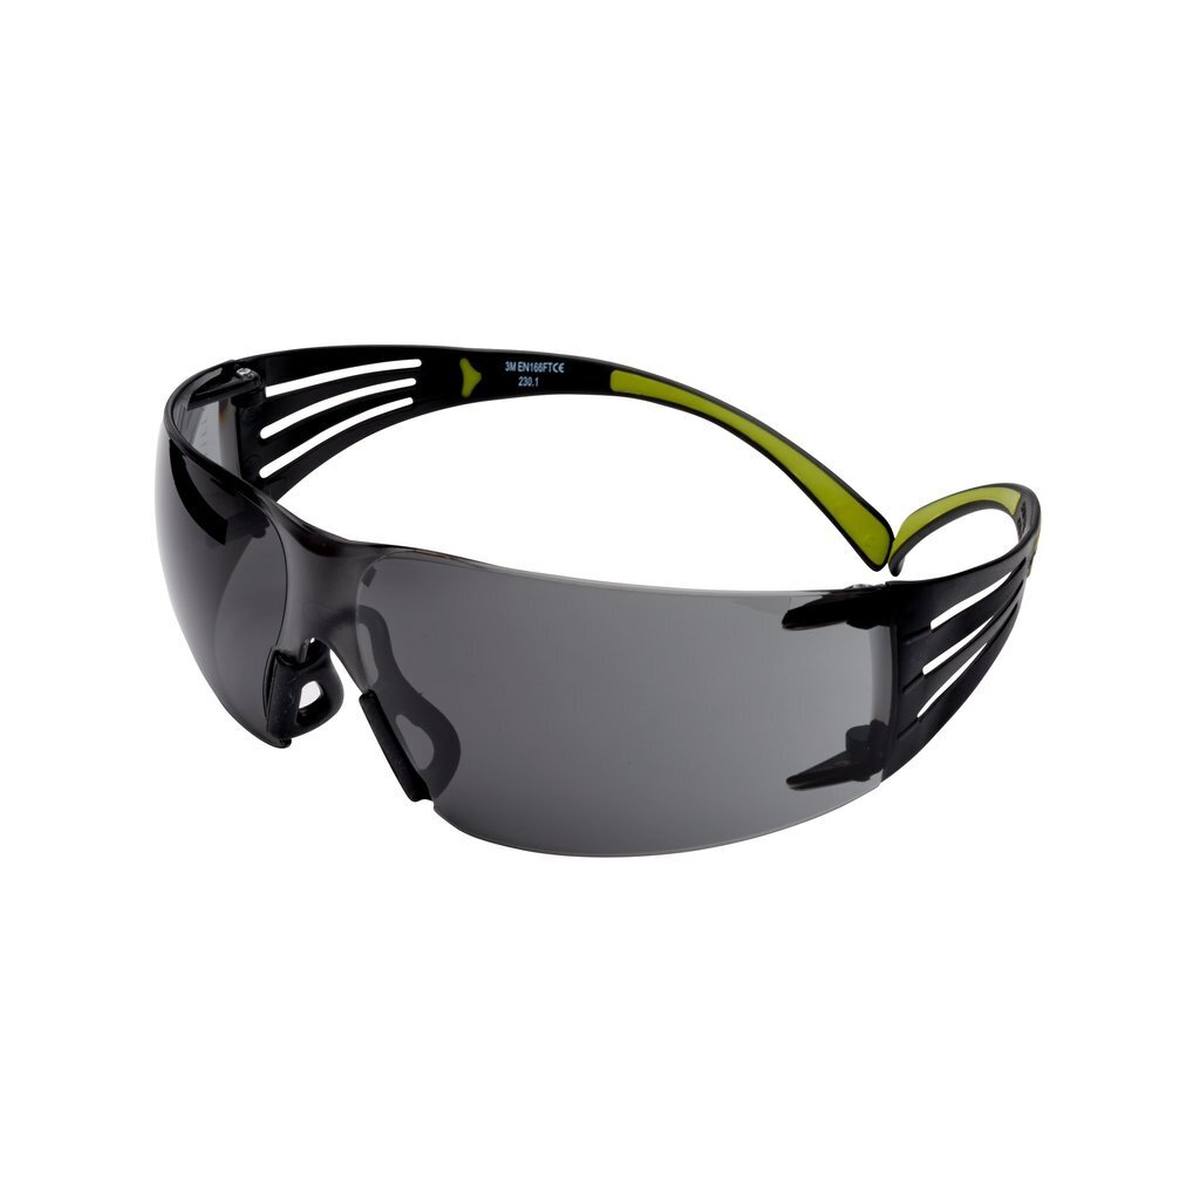 3M Gafas de protección SecureFit 400, patillas negras/verdes, tratamiento antirrayas/antivaho, lente gris, SF402AS/AF-EU